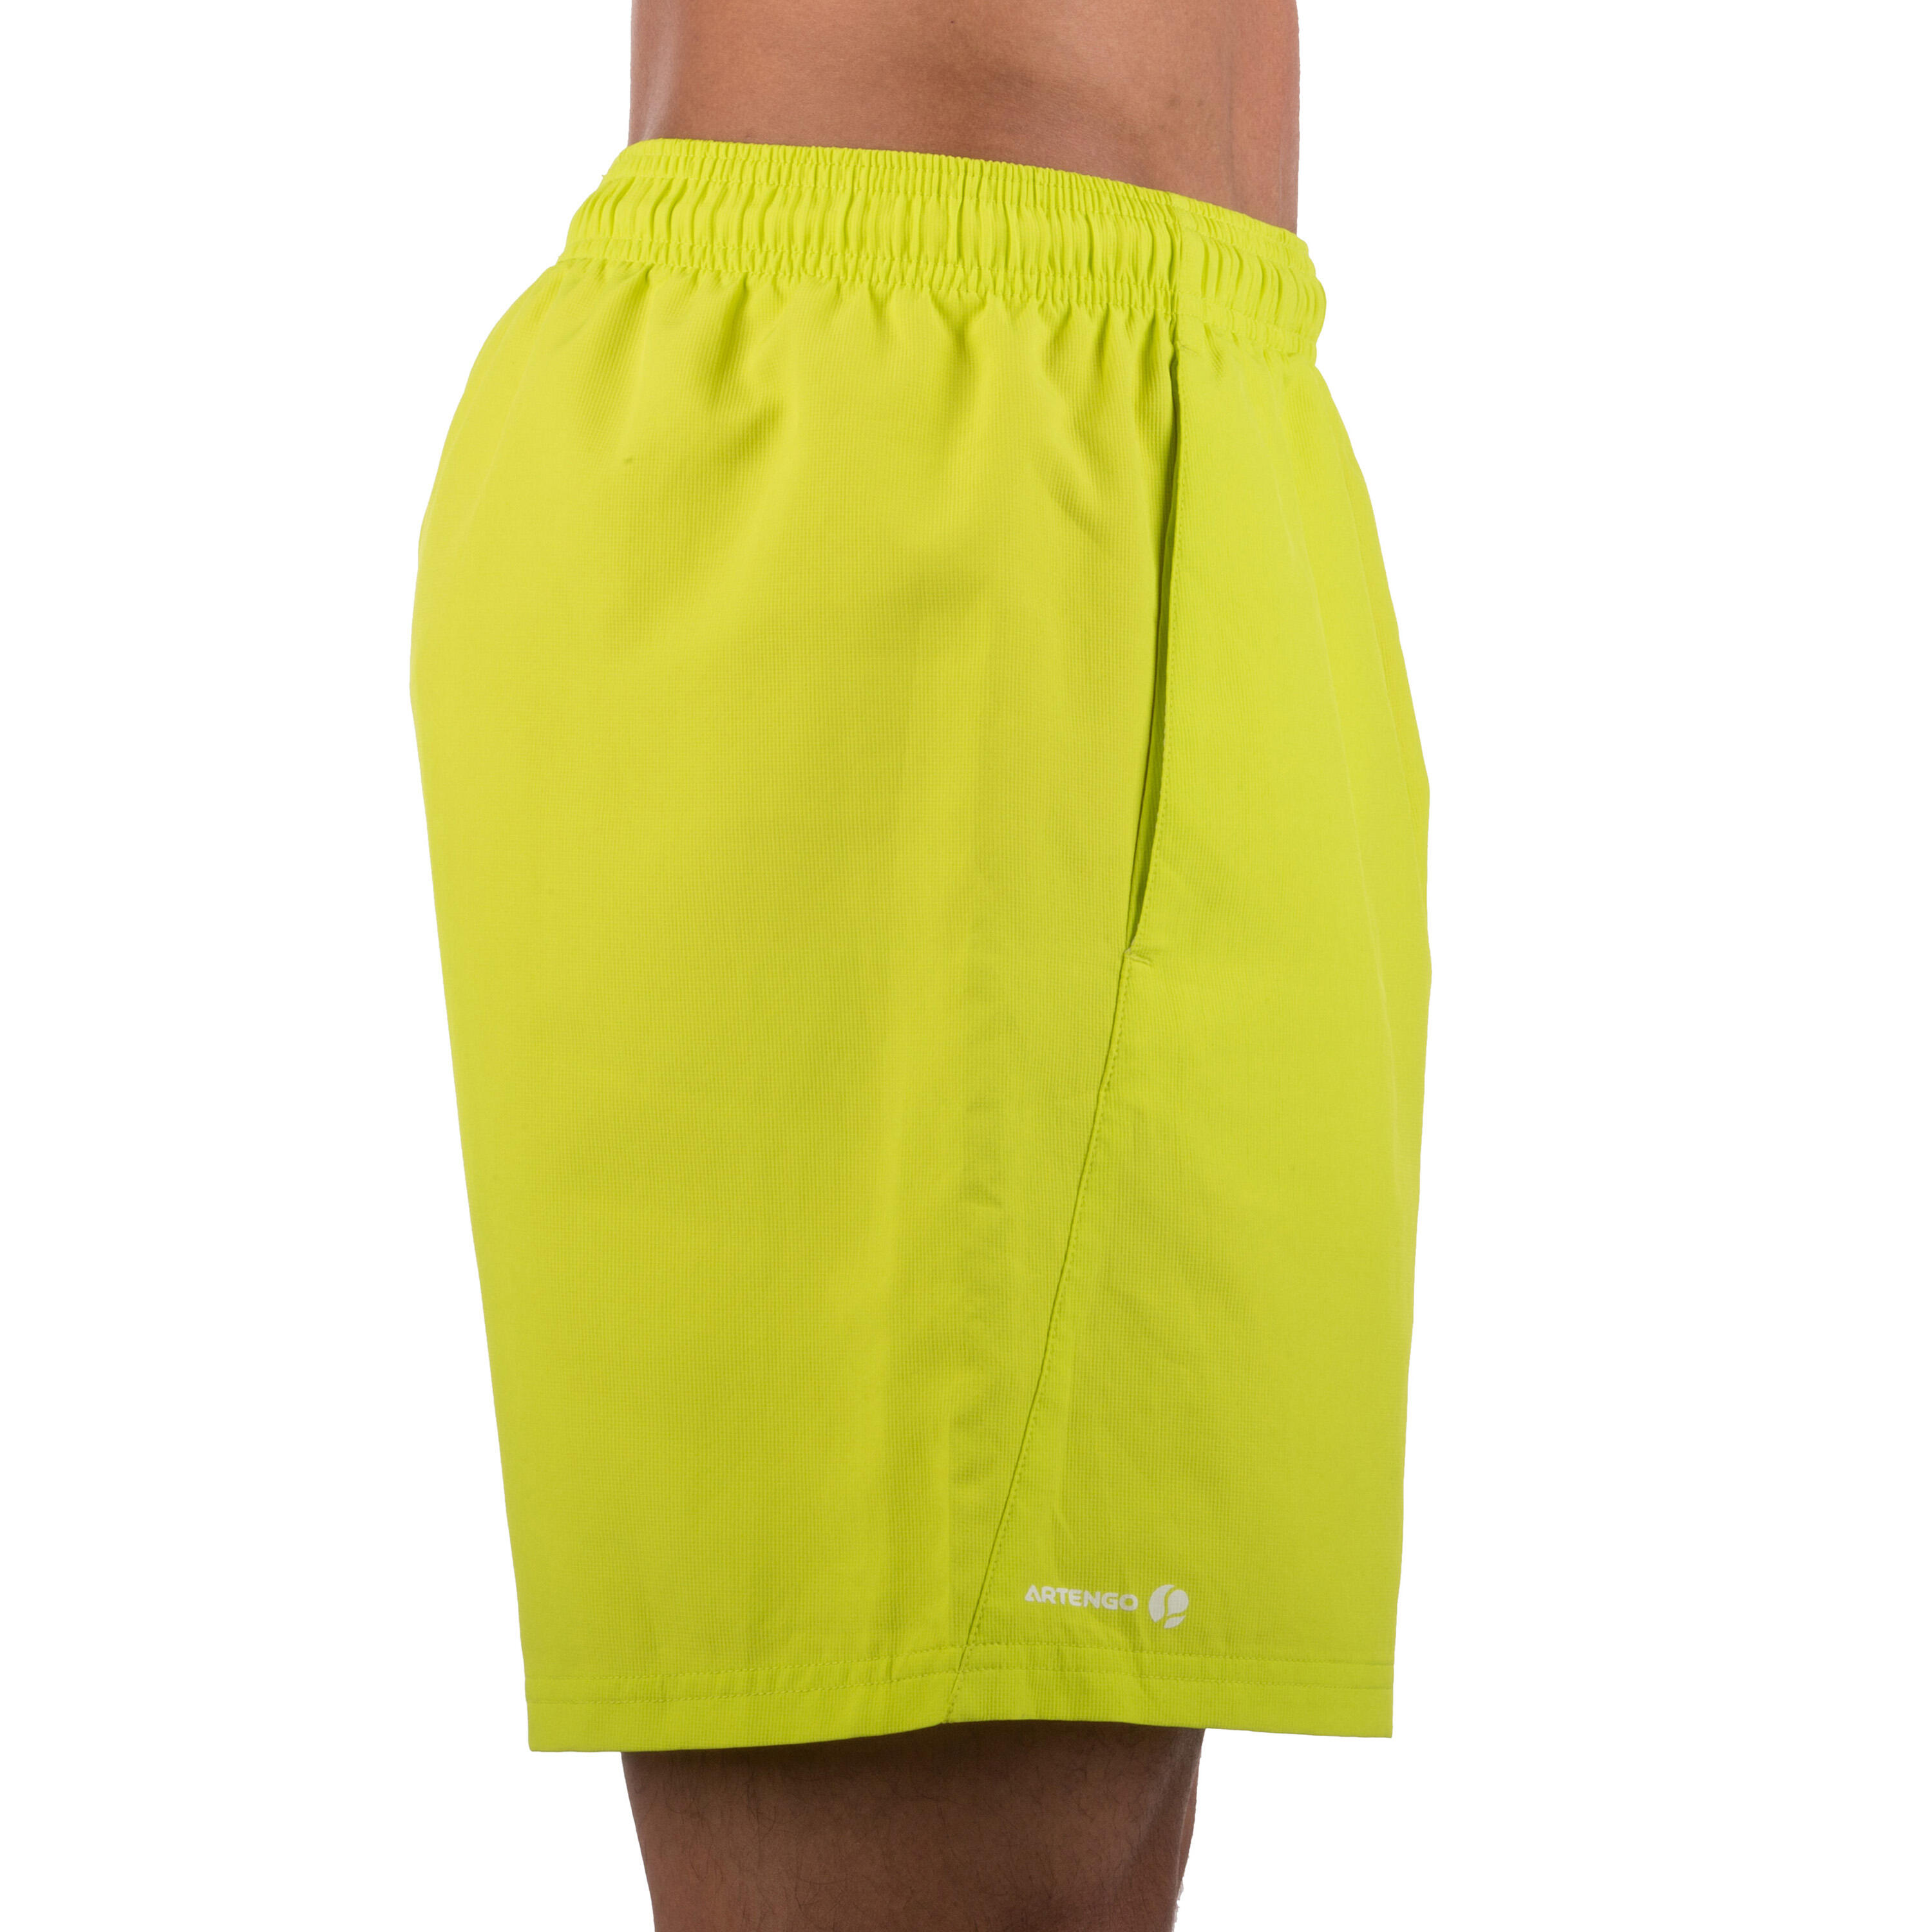 Essential 100 Padel Tennis Badminton Squash Table Tennis Shorts - Yellow 5/7